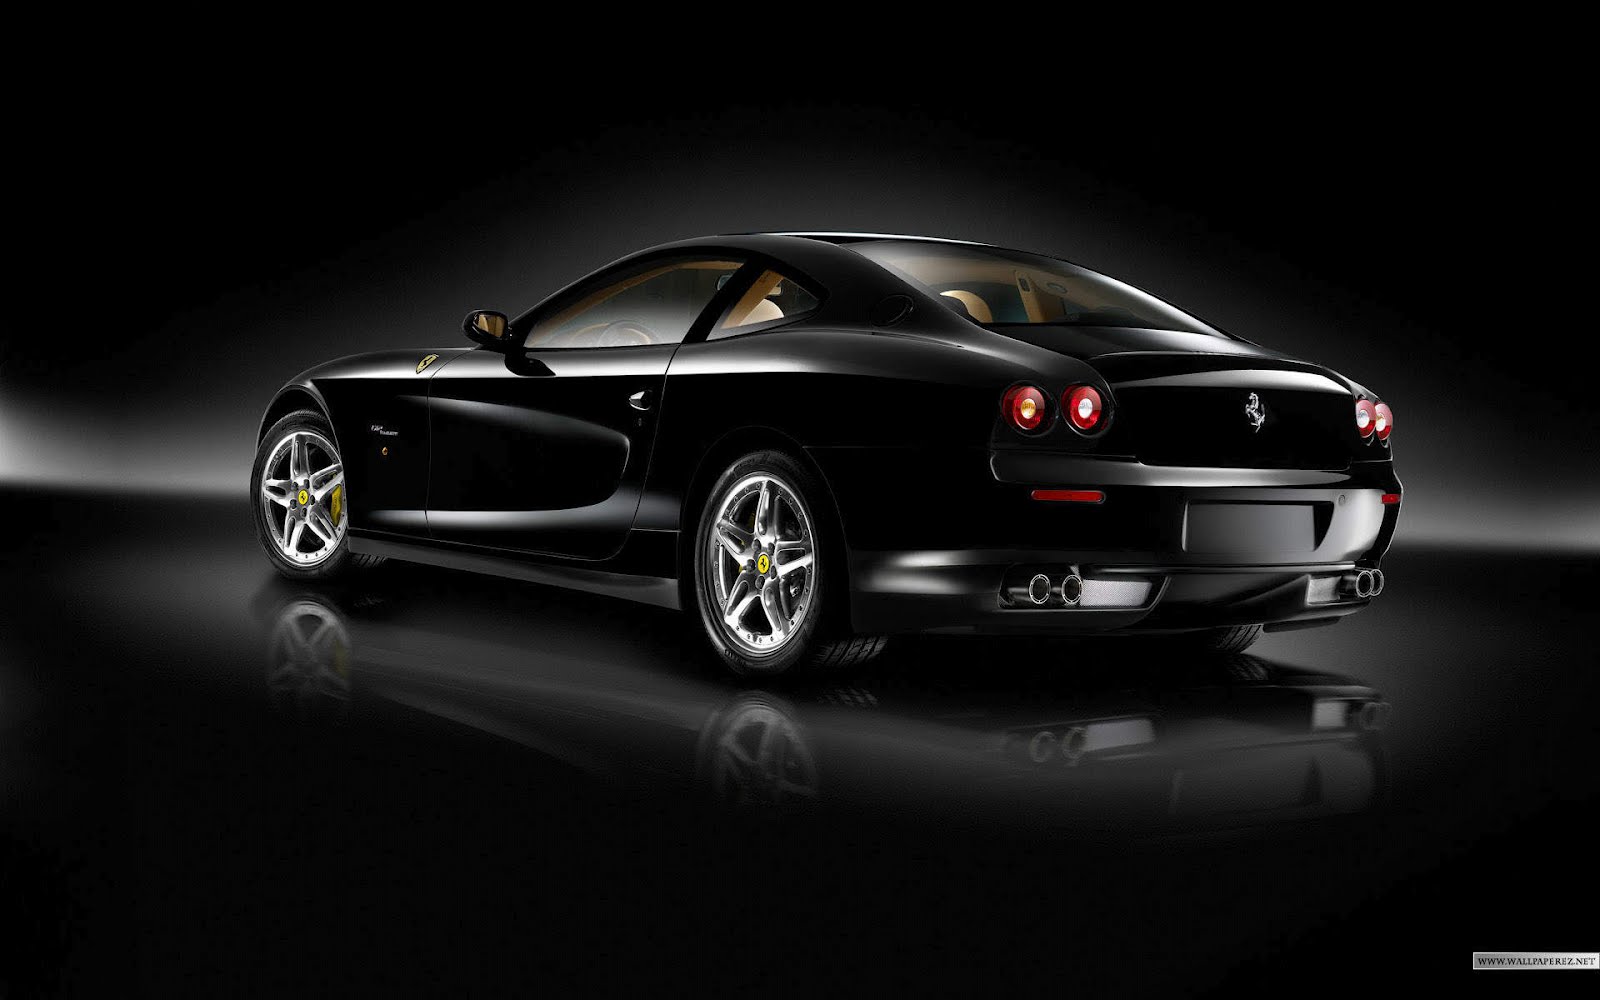 Black Ferrari Wallpaper New Car Modification Re